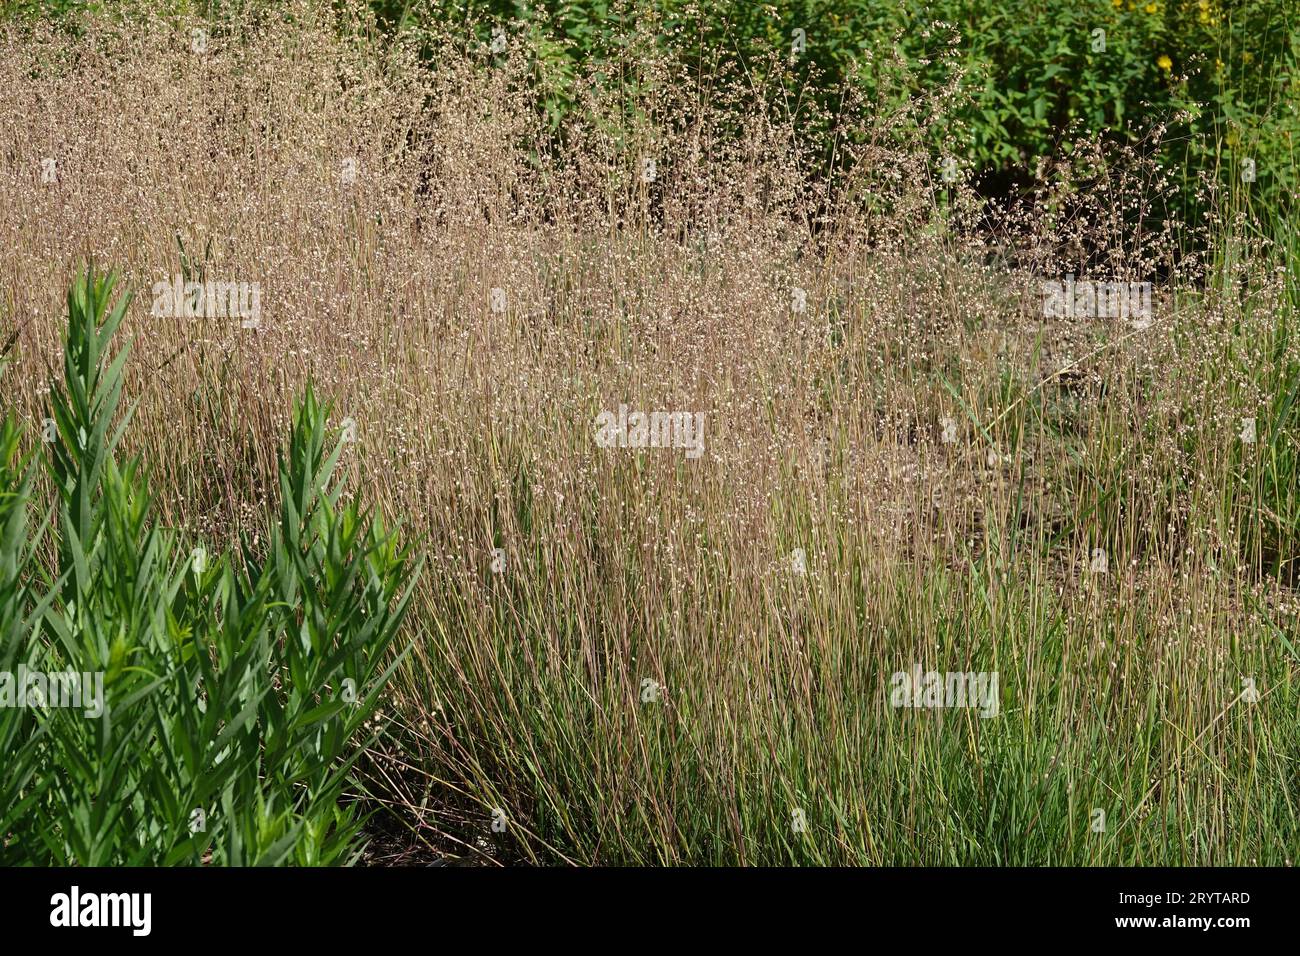 Briza media, Quaking-grass Stock Photo